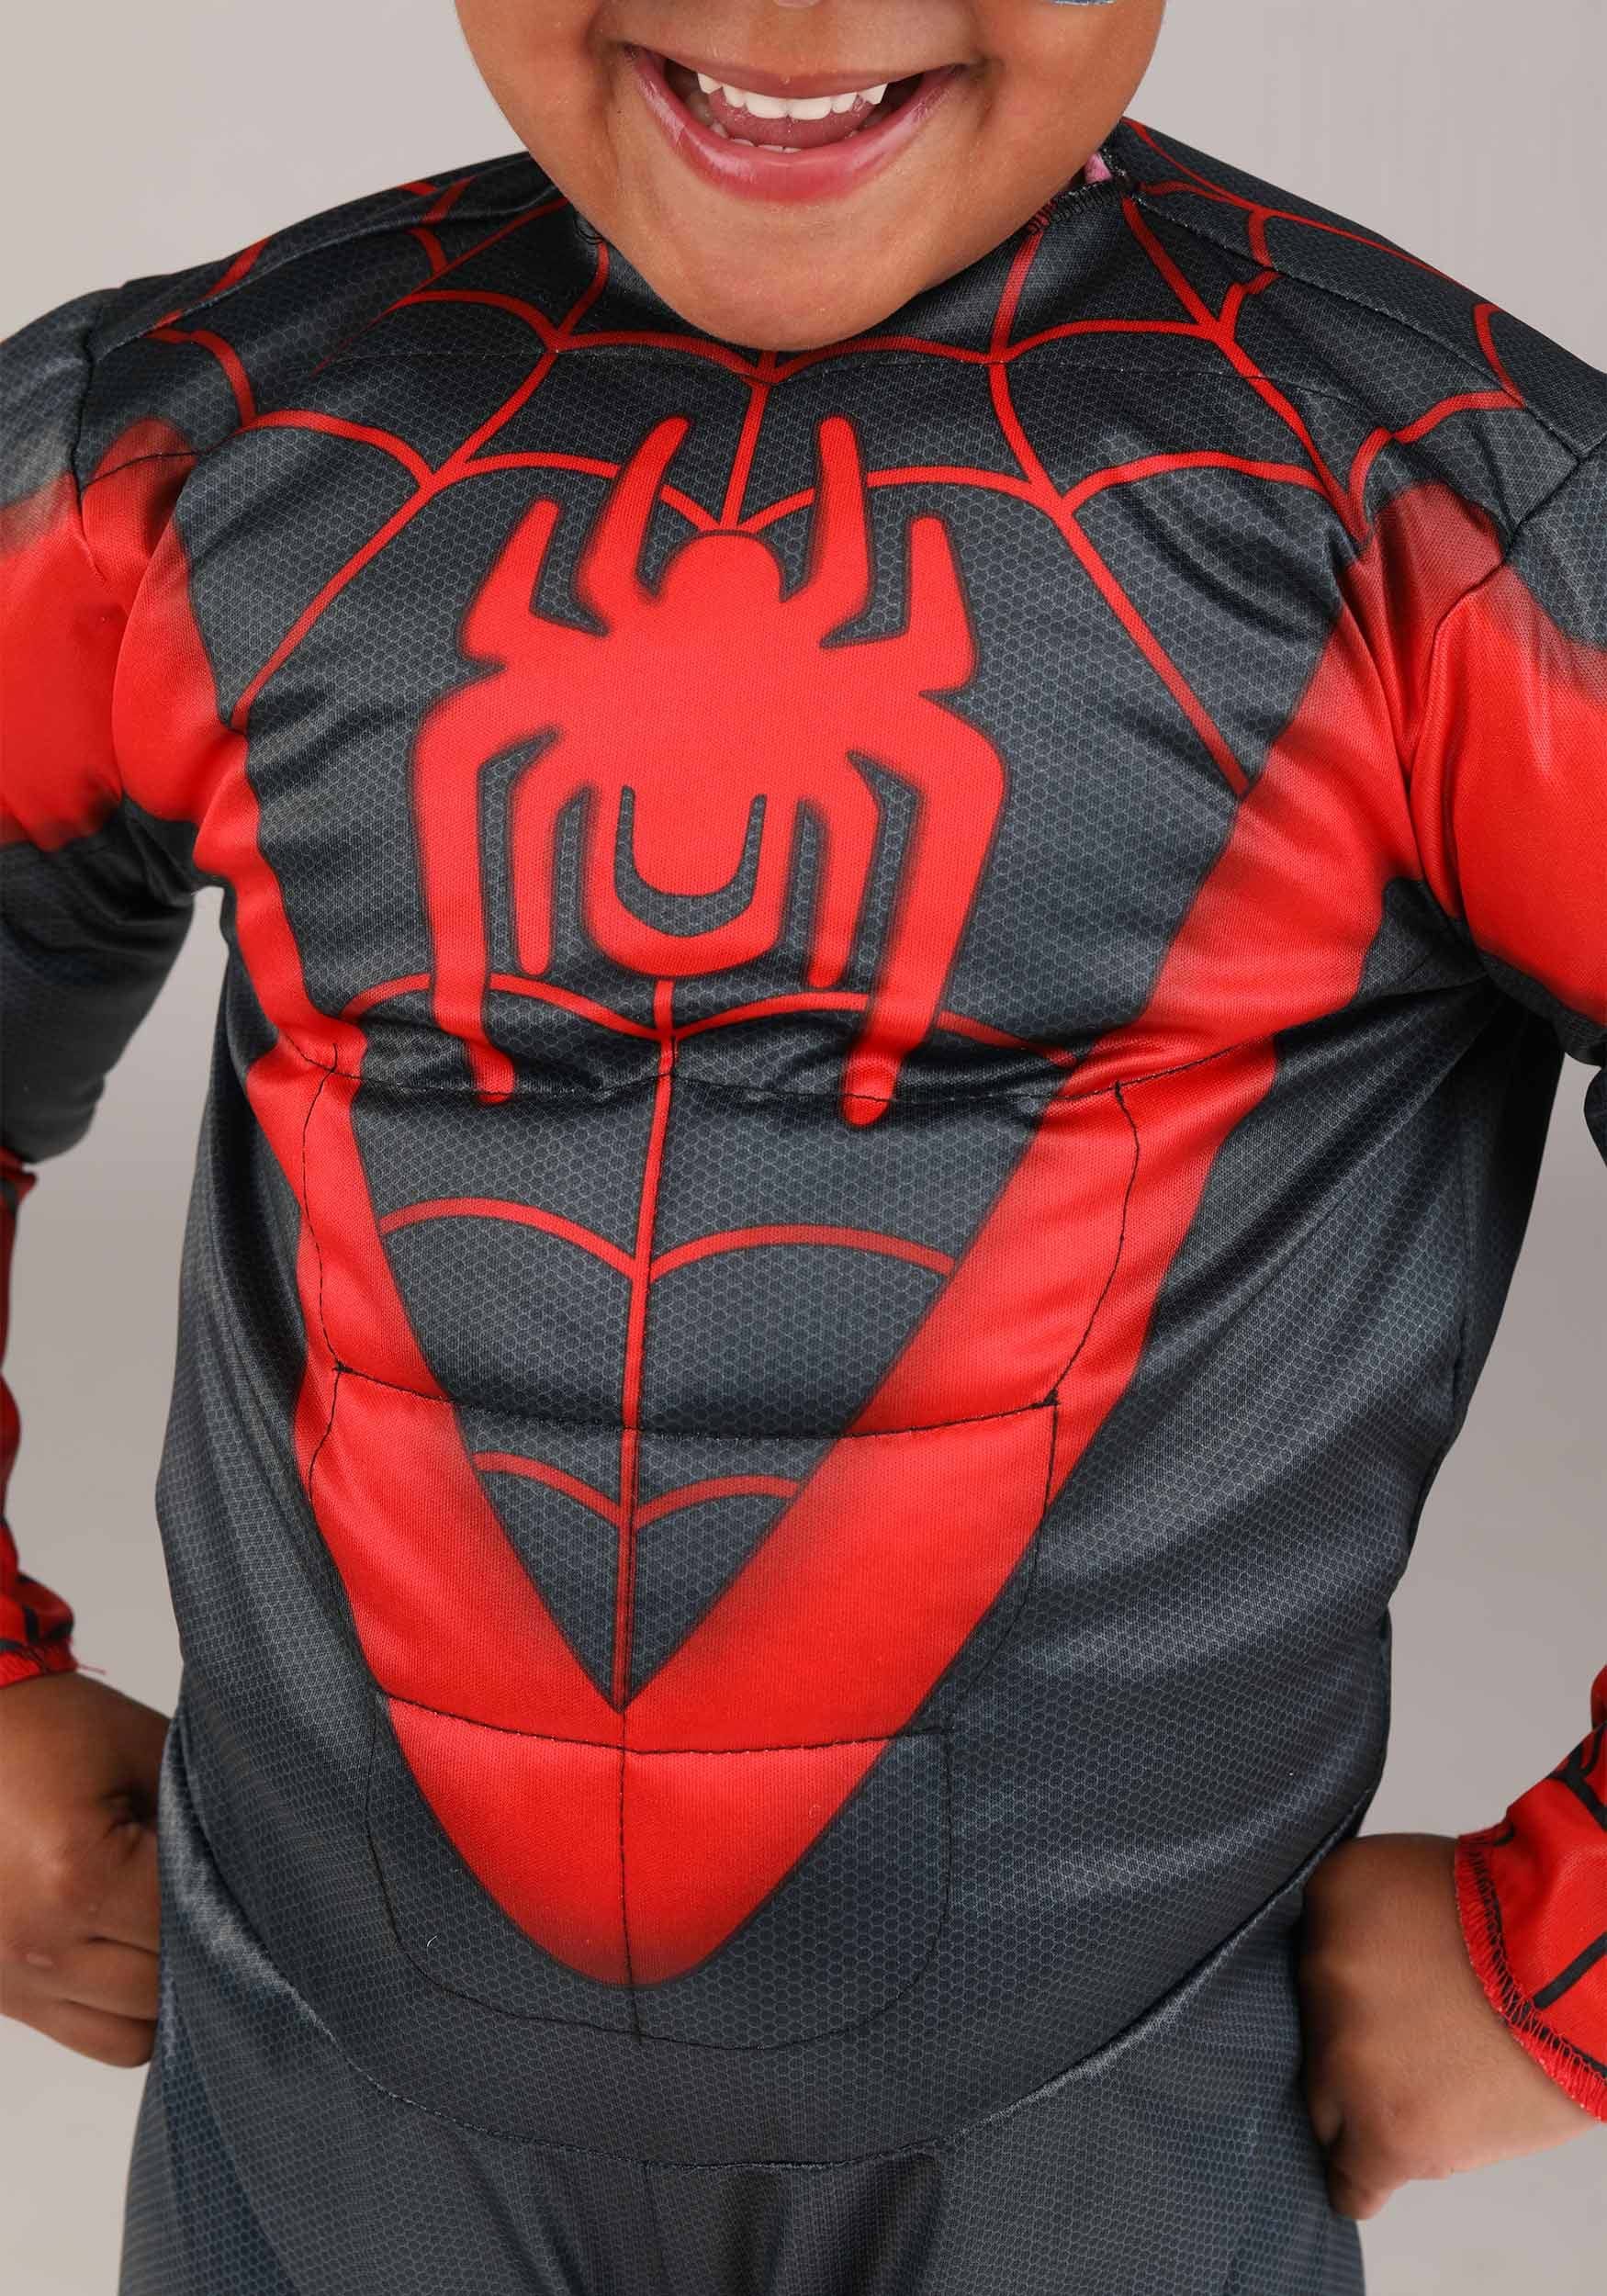 Kids' Spider-Man Costume - Marvel Spidey & His Amazing Friends